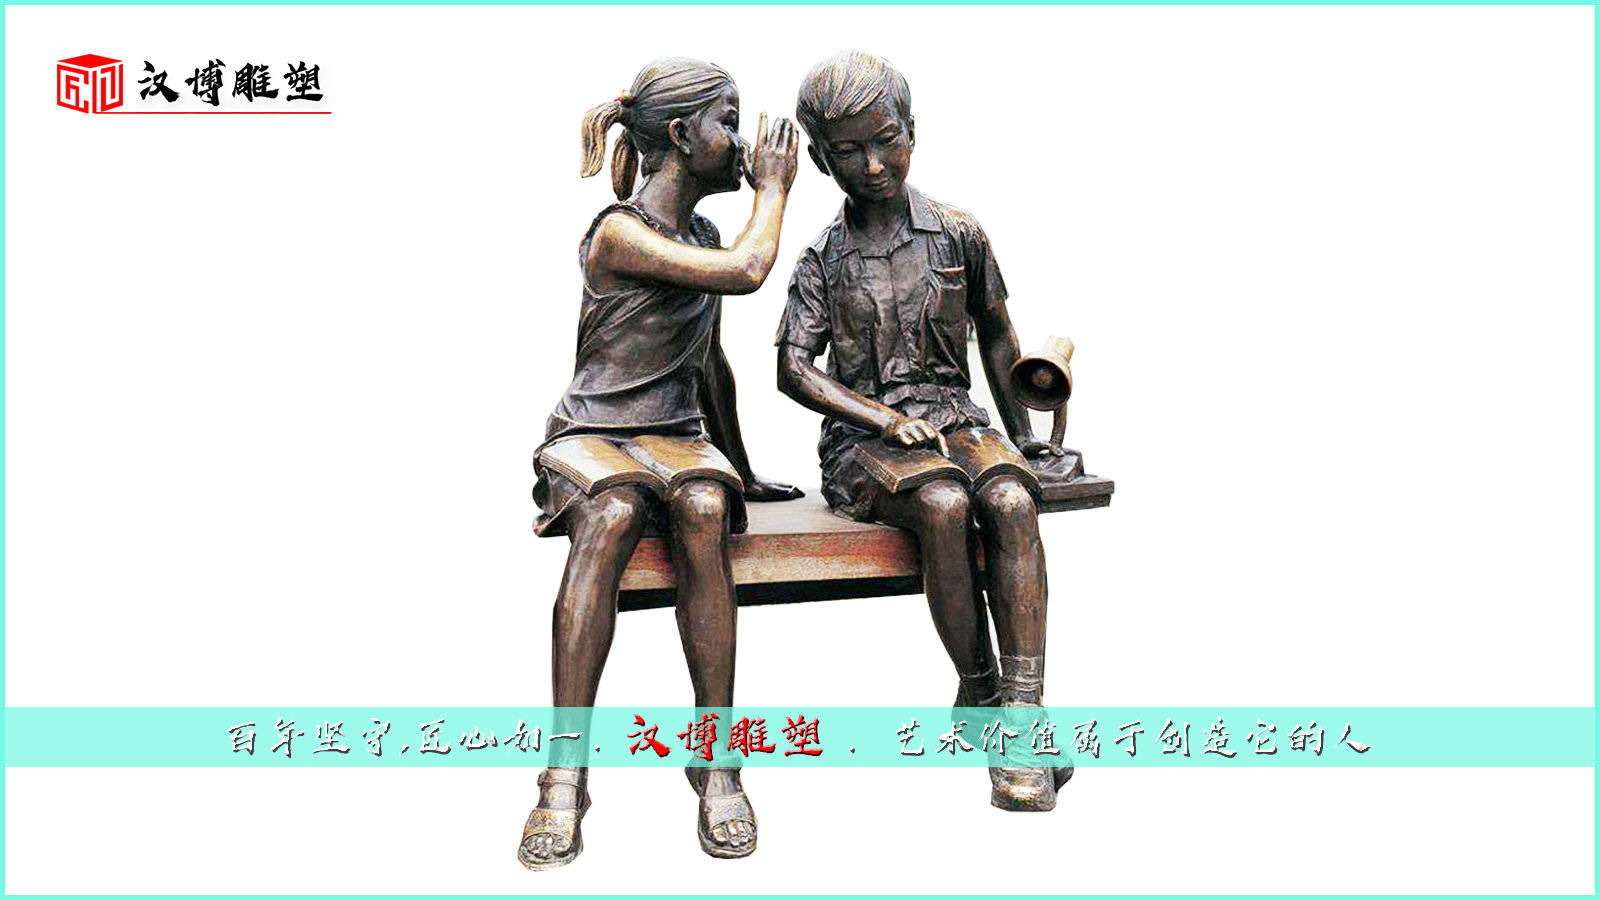 校园雕塑,校园景观铜雕,读书人物雕像